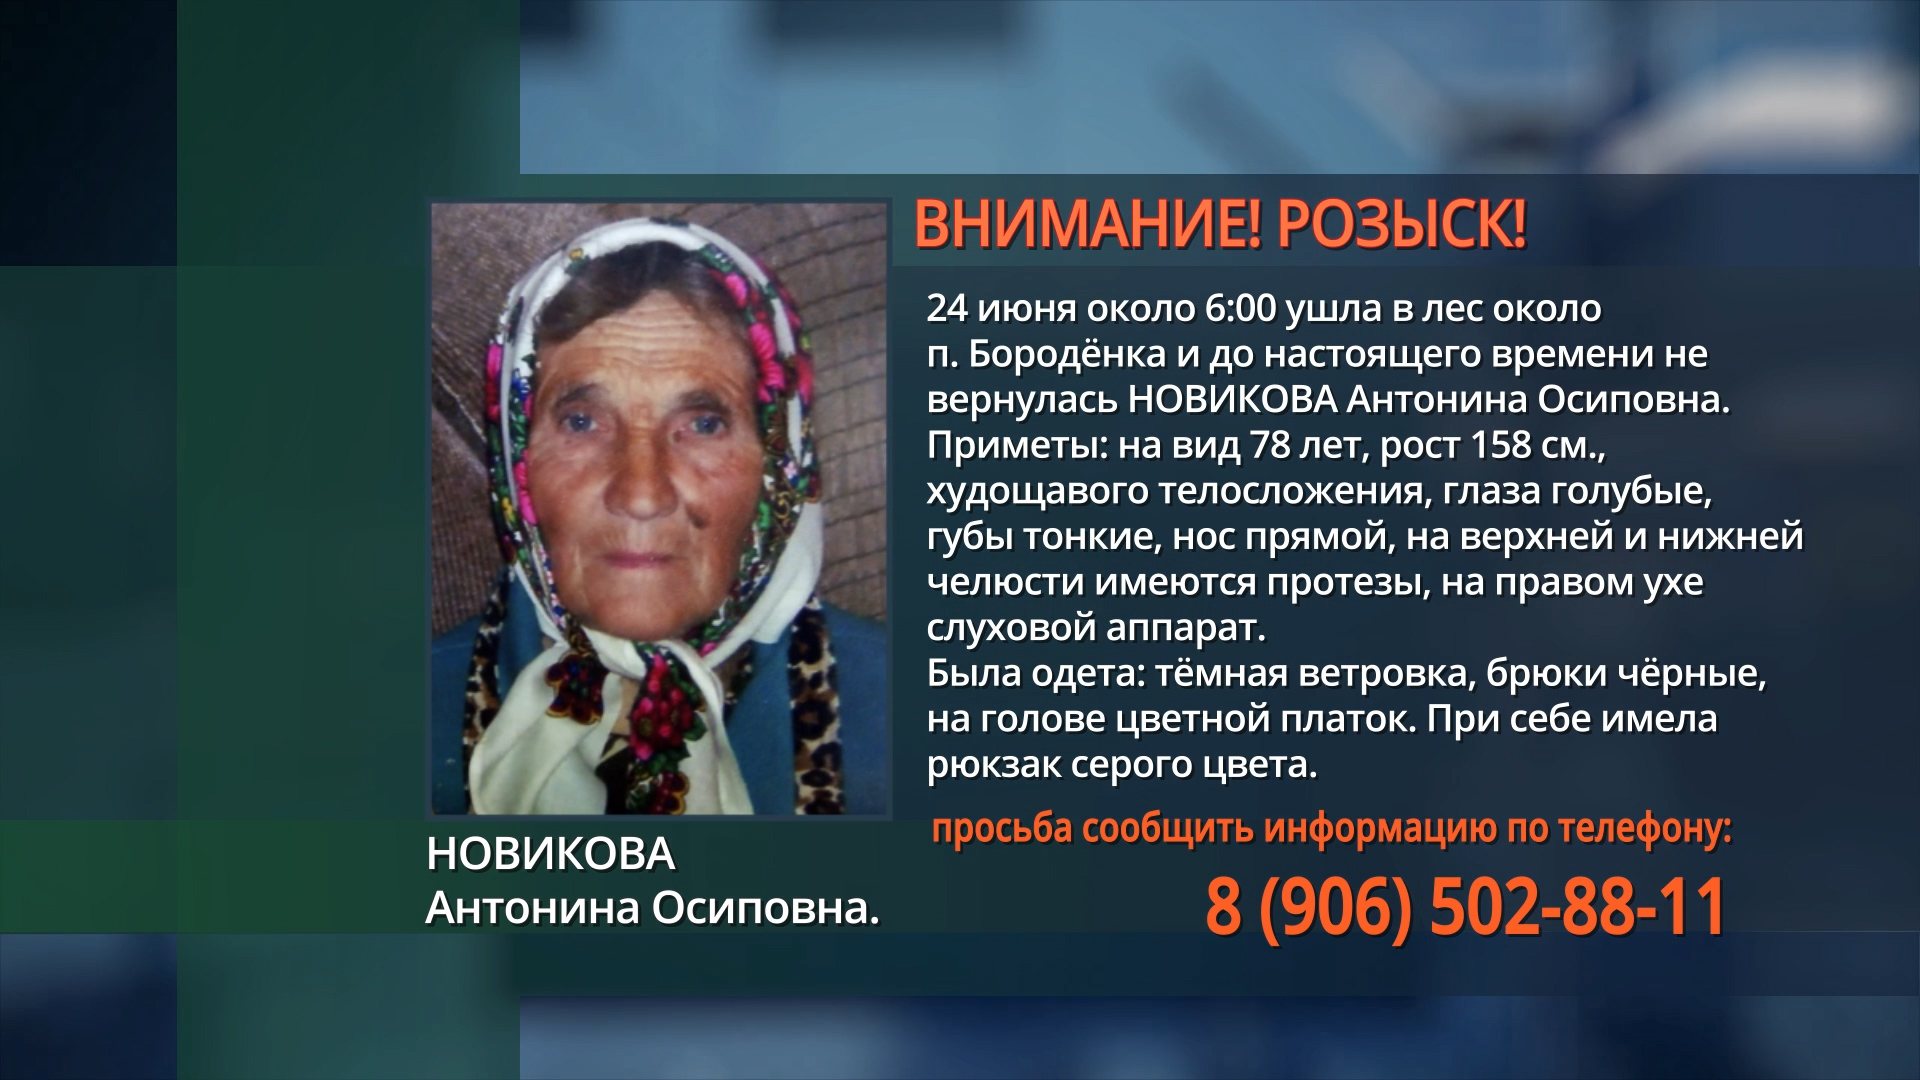 В Брянской области в лесу пропала пожилая женщина